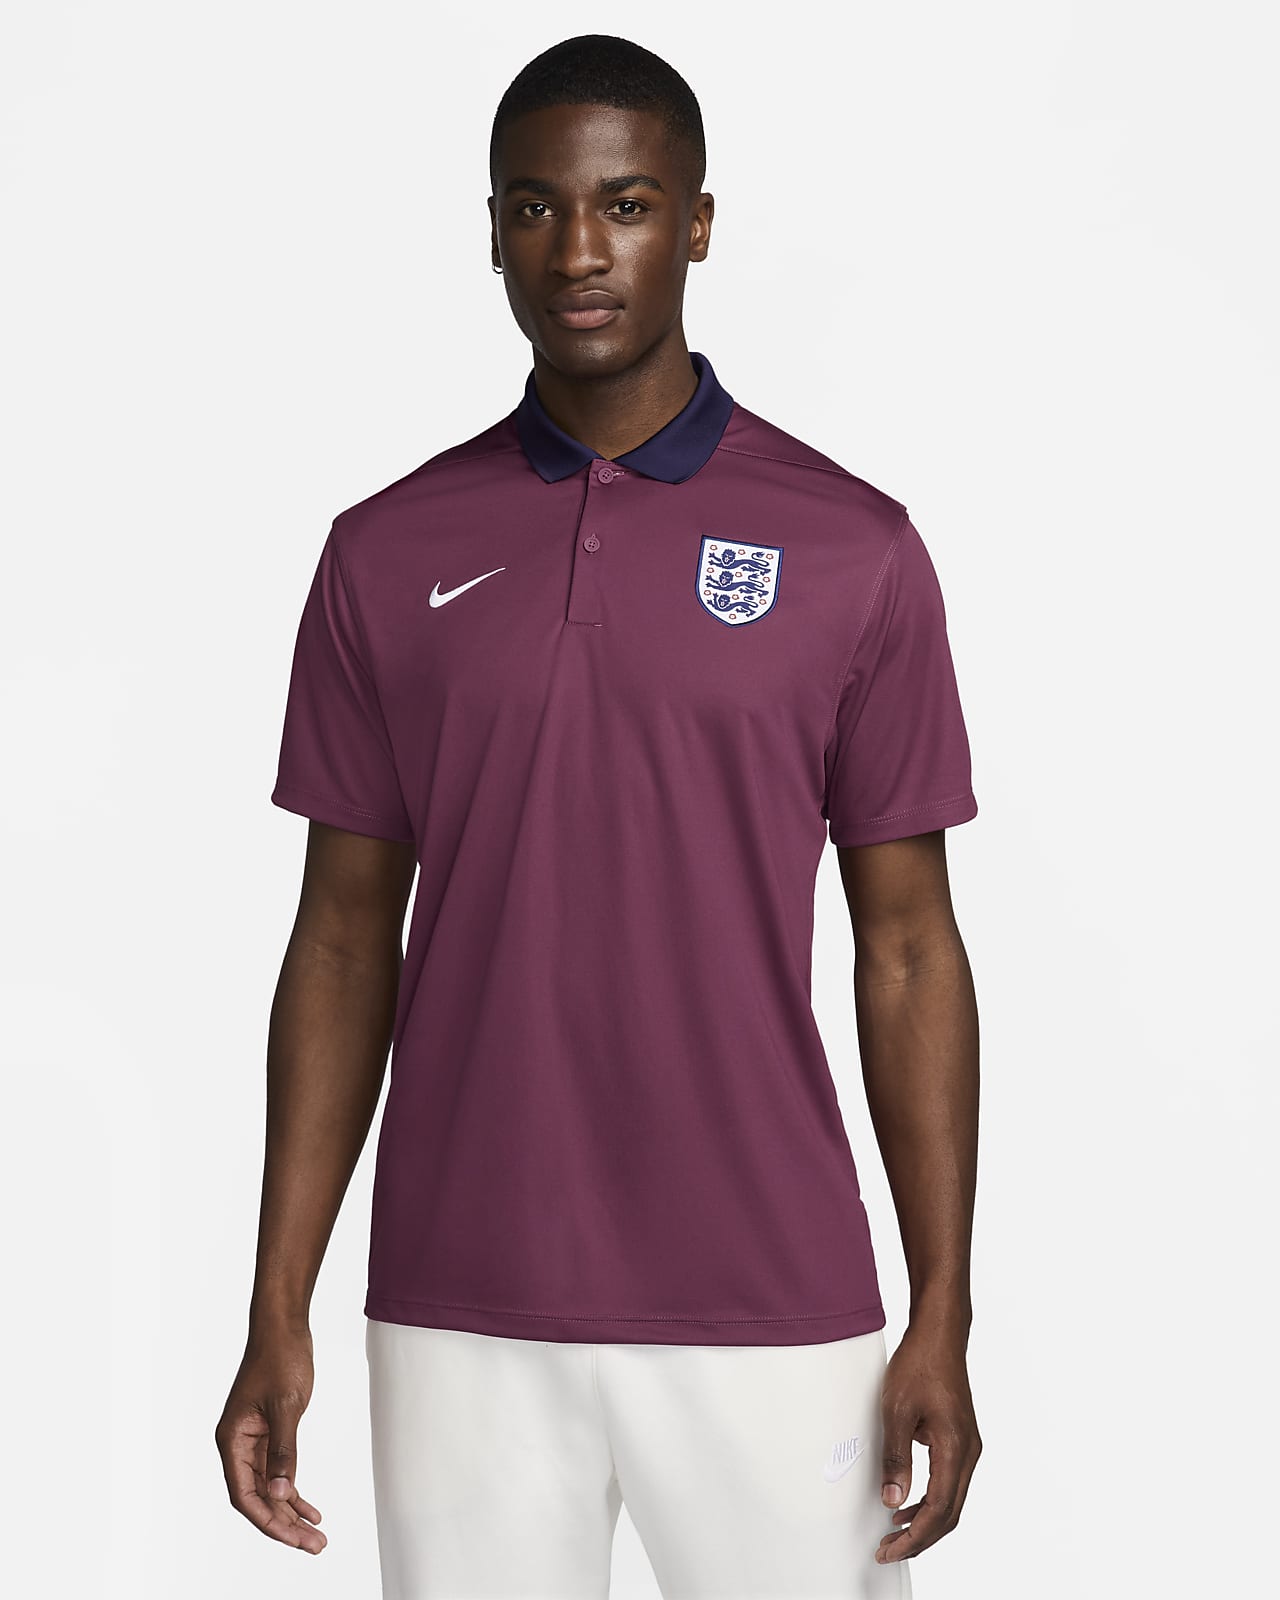 Ανδρική ποδοσφαιρική μπλούζα πόλο Nike Dri-FIT Αγγλία Victory